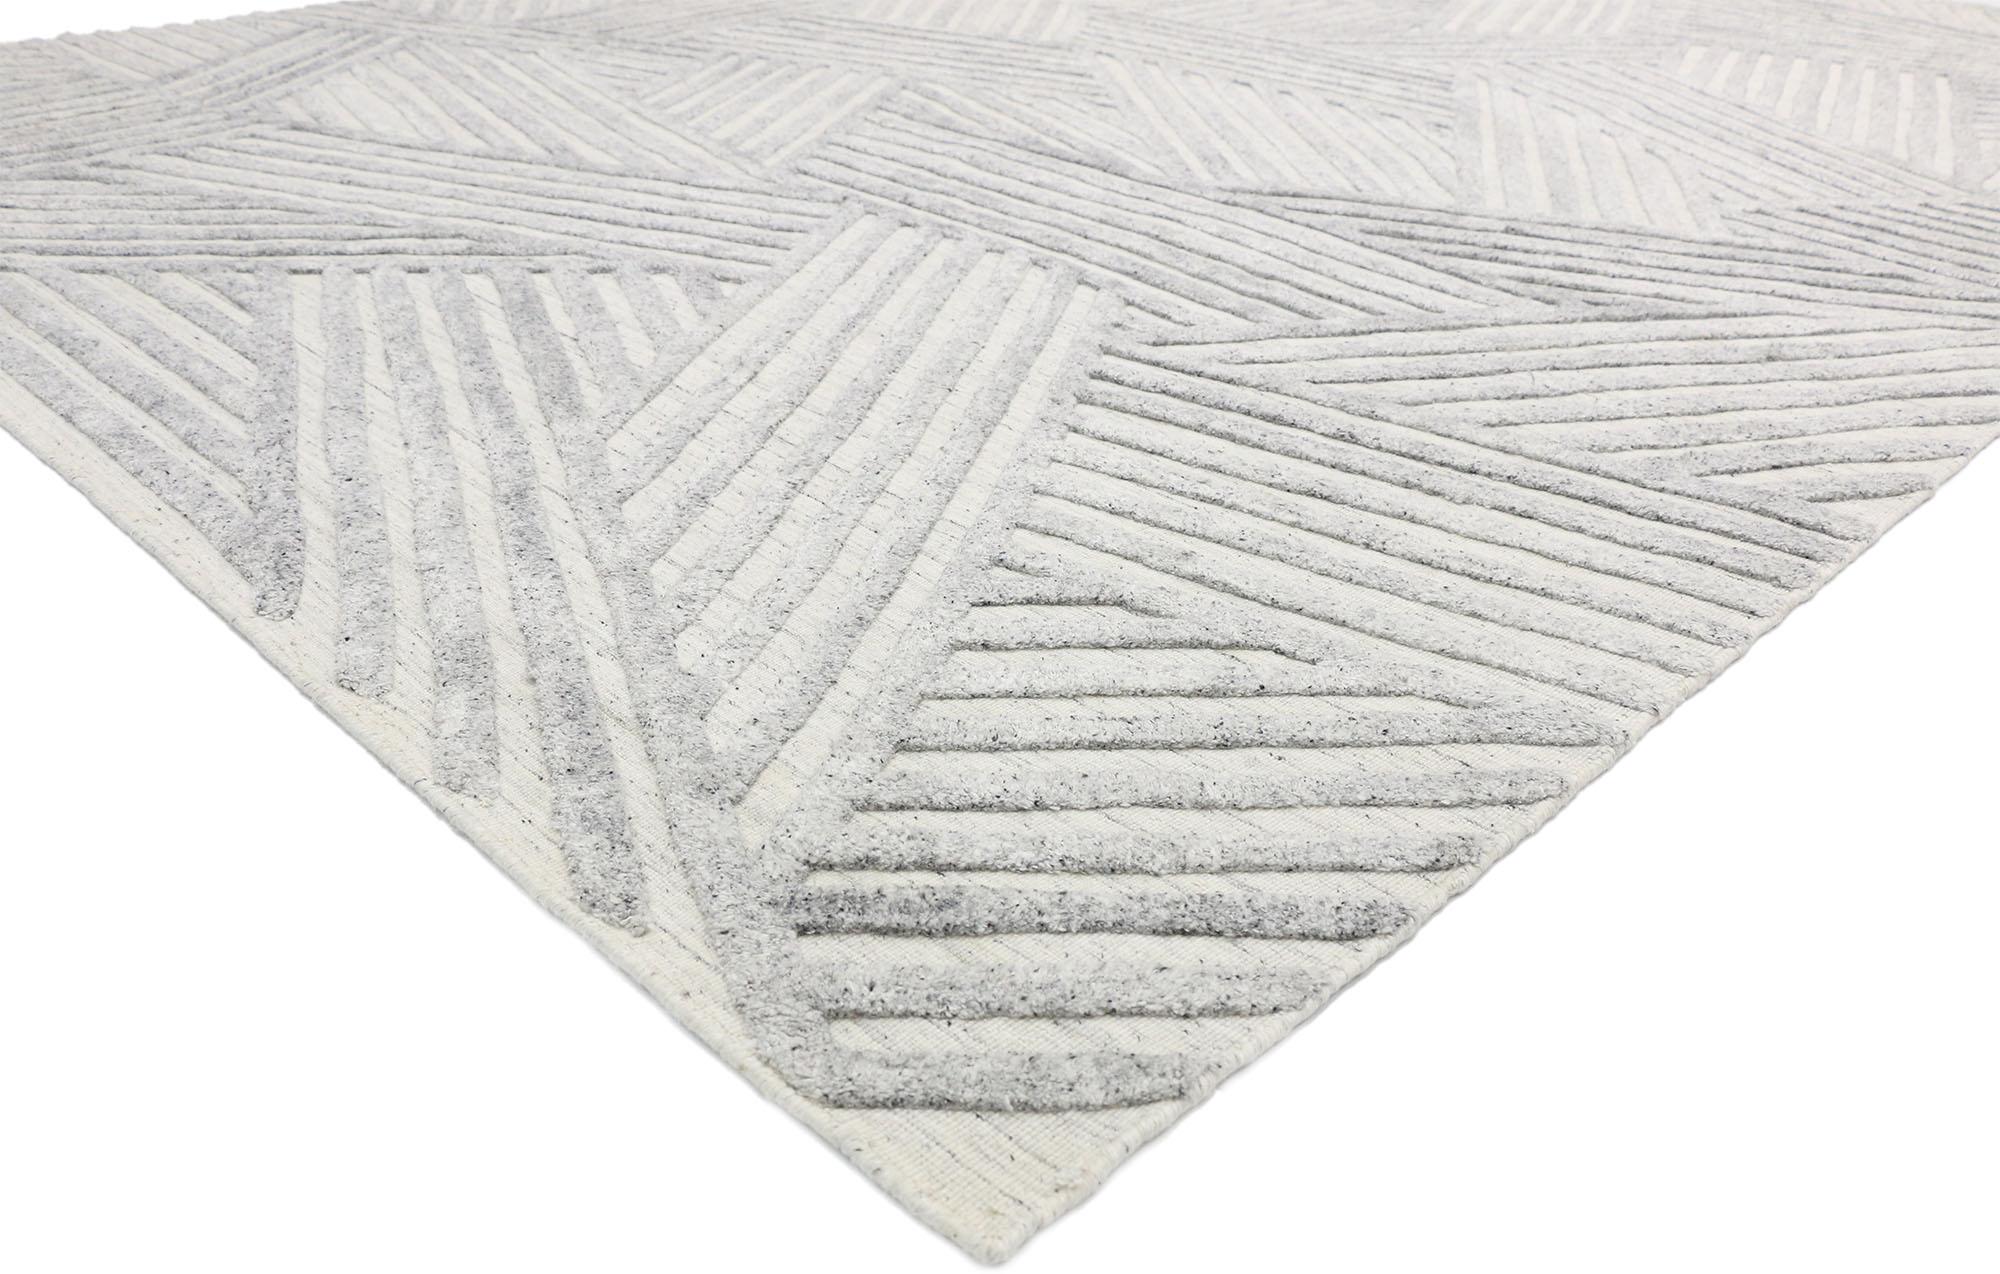 30422 Tapis moderne texturé High-Low 09'00 x 11'10. La sophistication moderne rencontre le zen dans ce tapis haut-bas texturé, créant un mélange harmonieux qui met l'accent sur la simplicité, le minimalisme et la tranquillité. Cette fusion associe